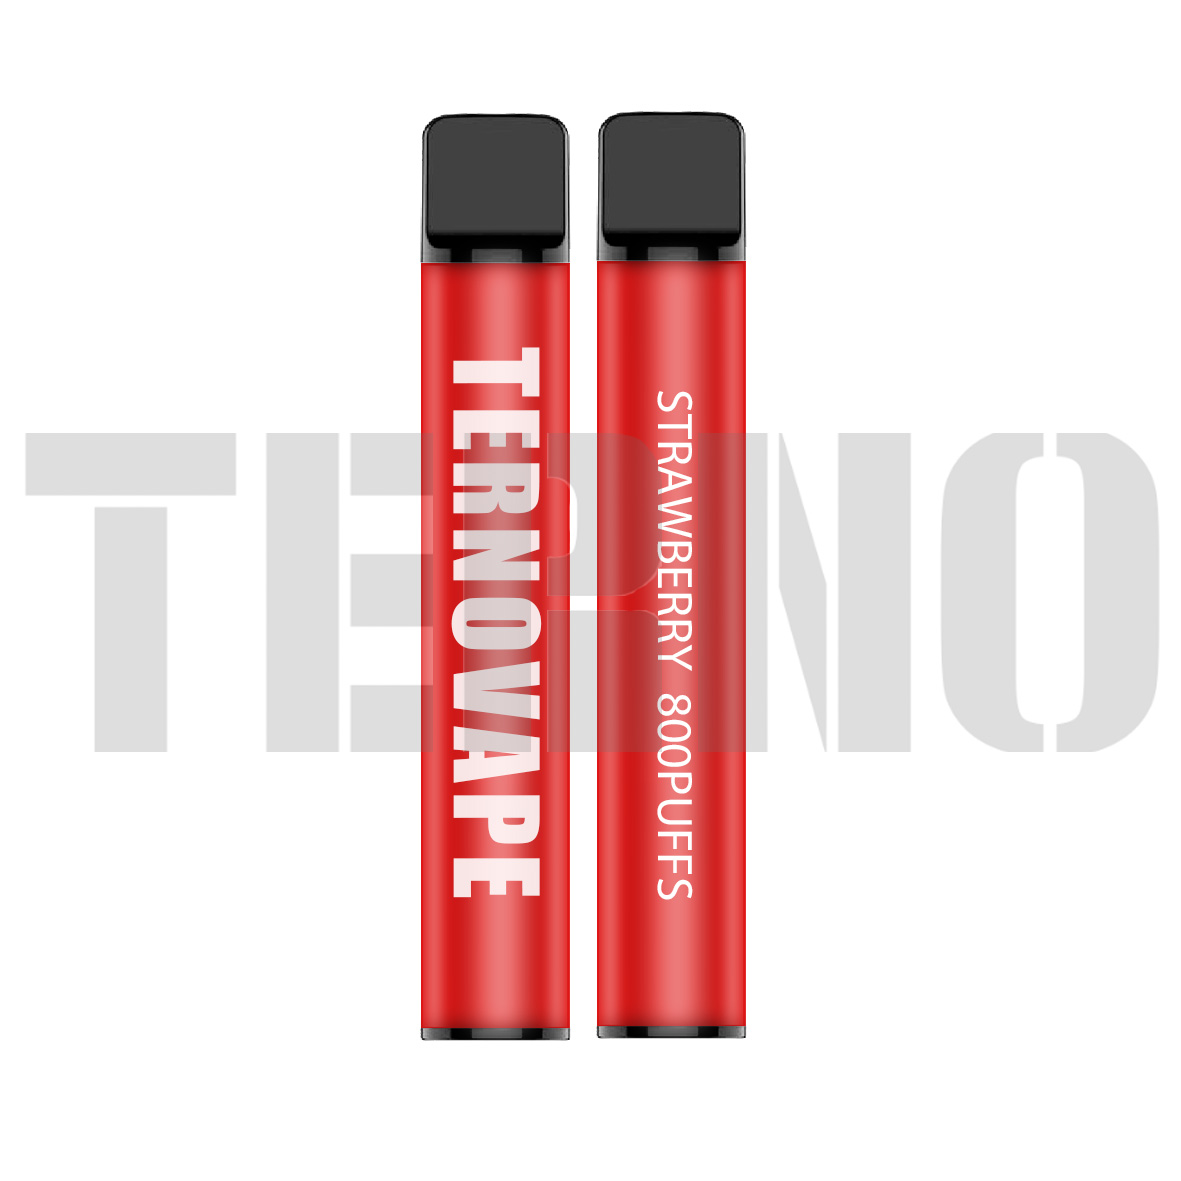 Terno YT800 disposable vape kit 800puffs - 10 